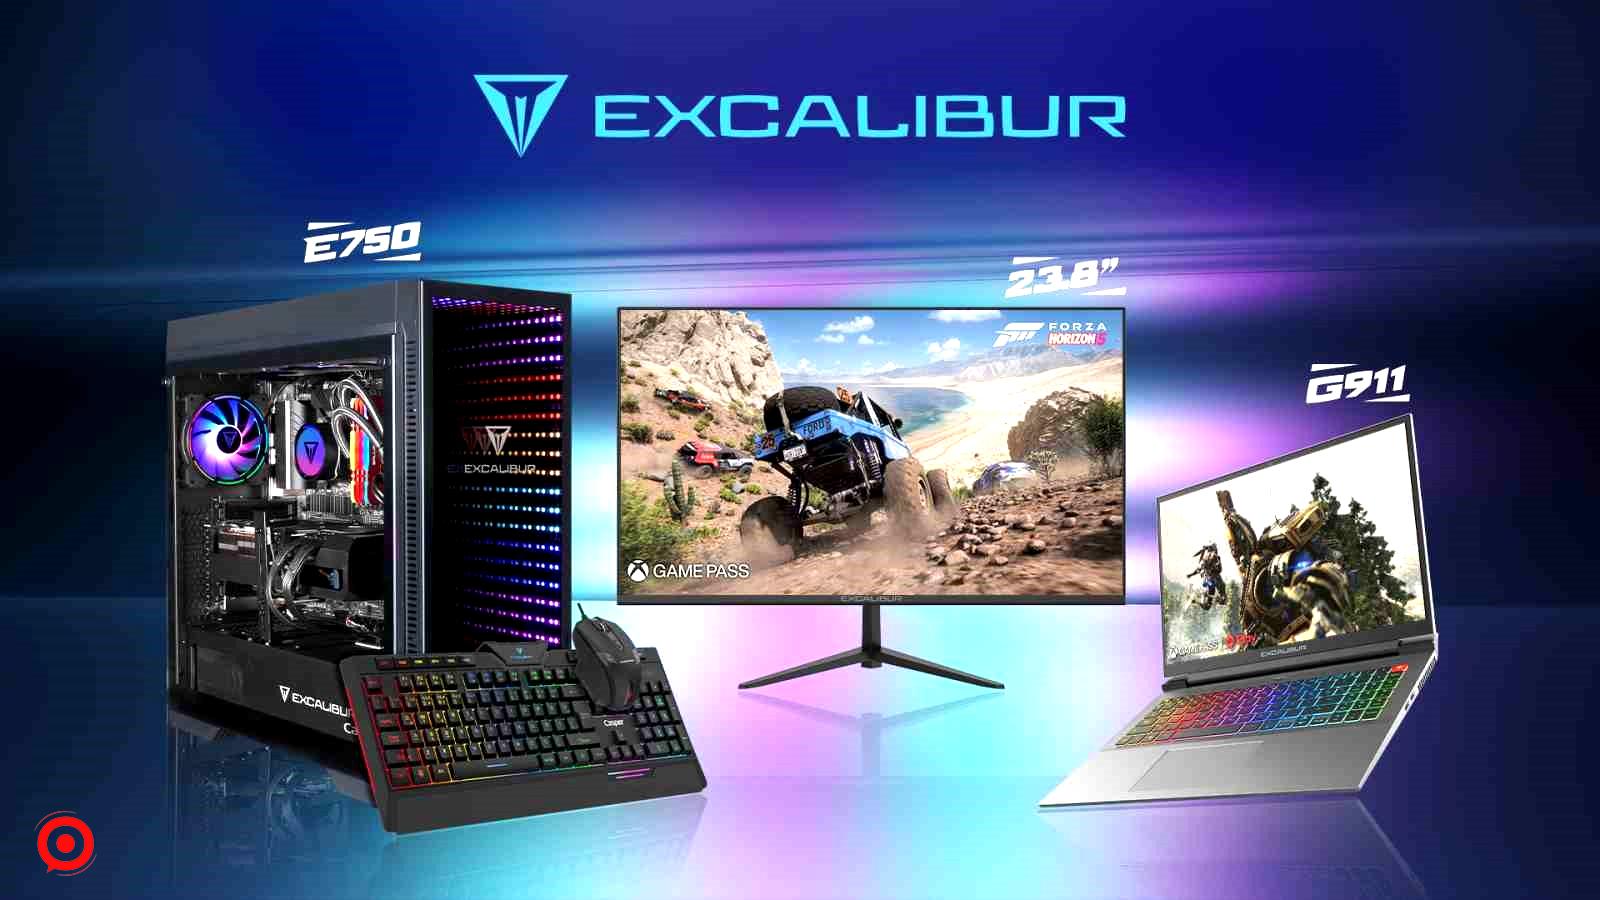 Excalibur oyun endüstrisini şekillendiren 4 farklı oyuncu profilini açıkladı